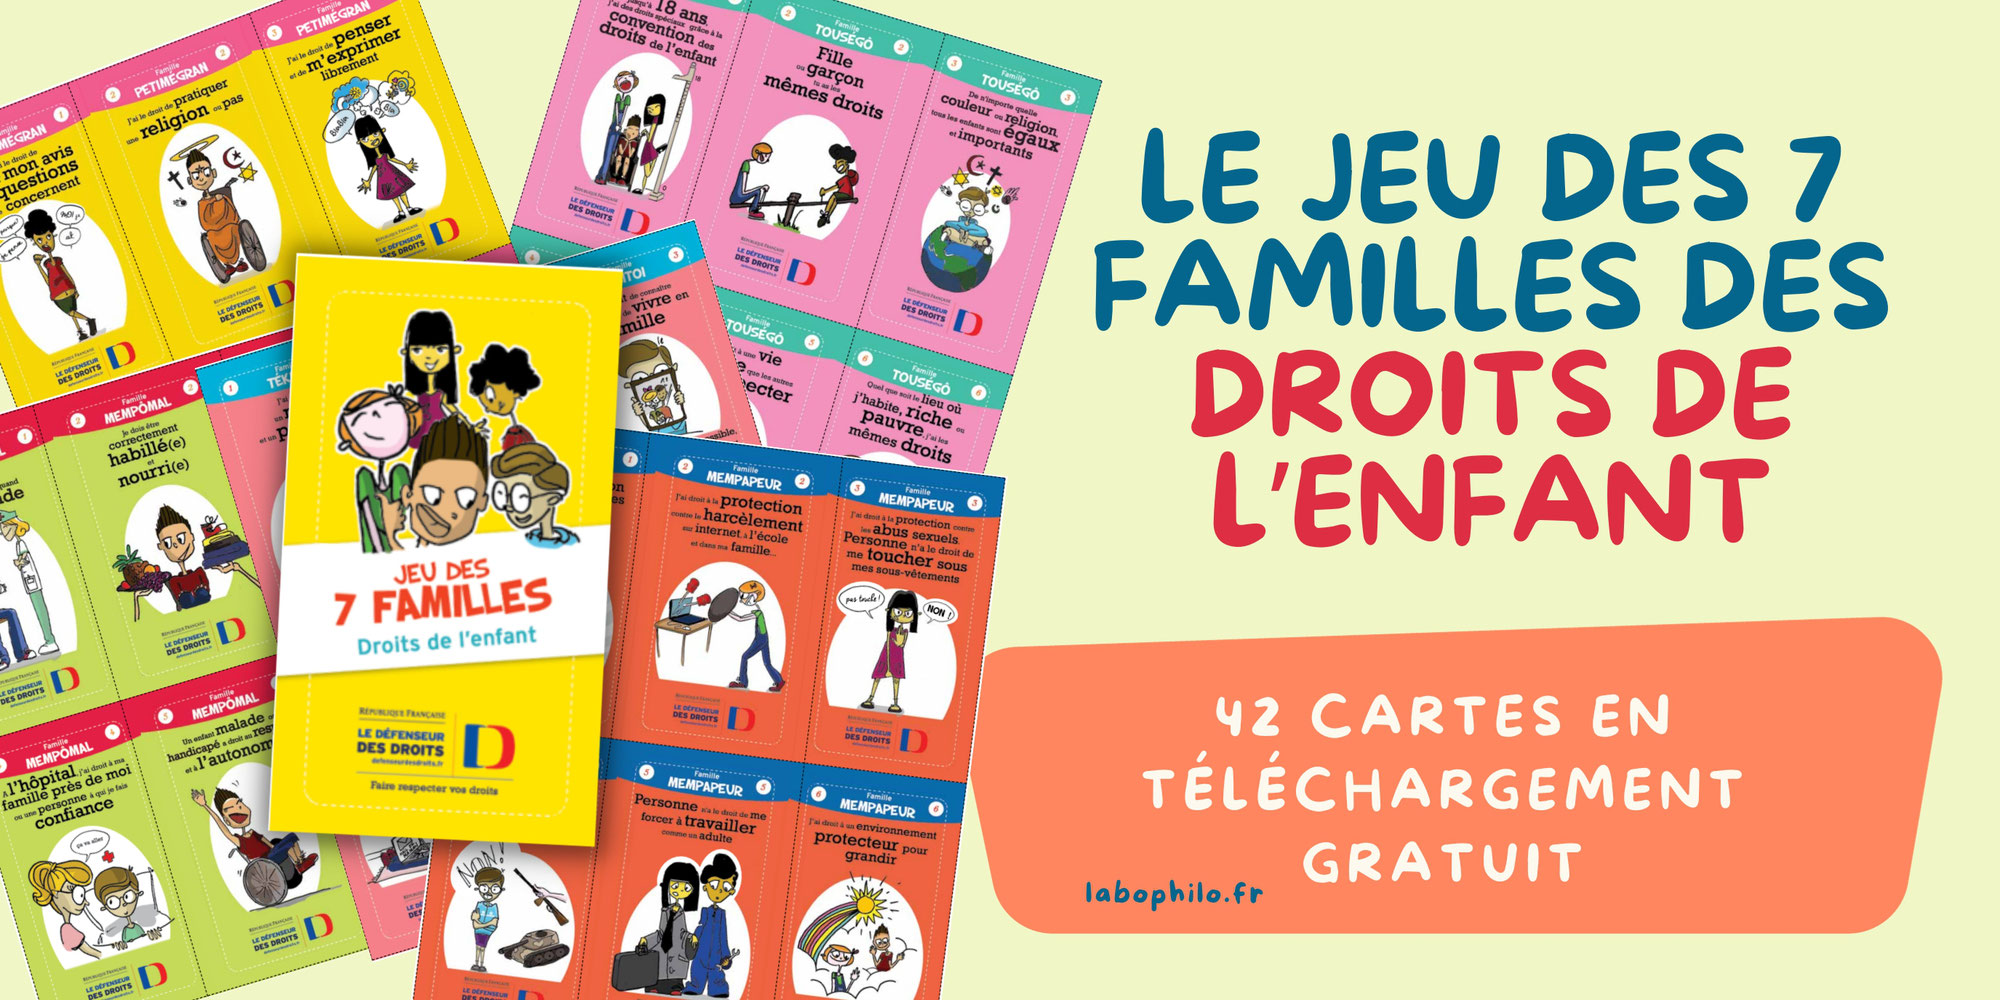 Jeu des 7 familles des DROITS DE L'ENFANT gratuit à télécharger - 42 cartes + brochure (Défenseur des Droits)